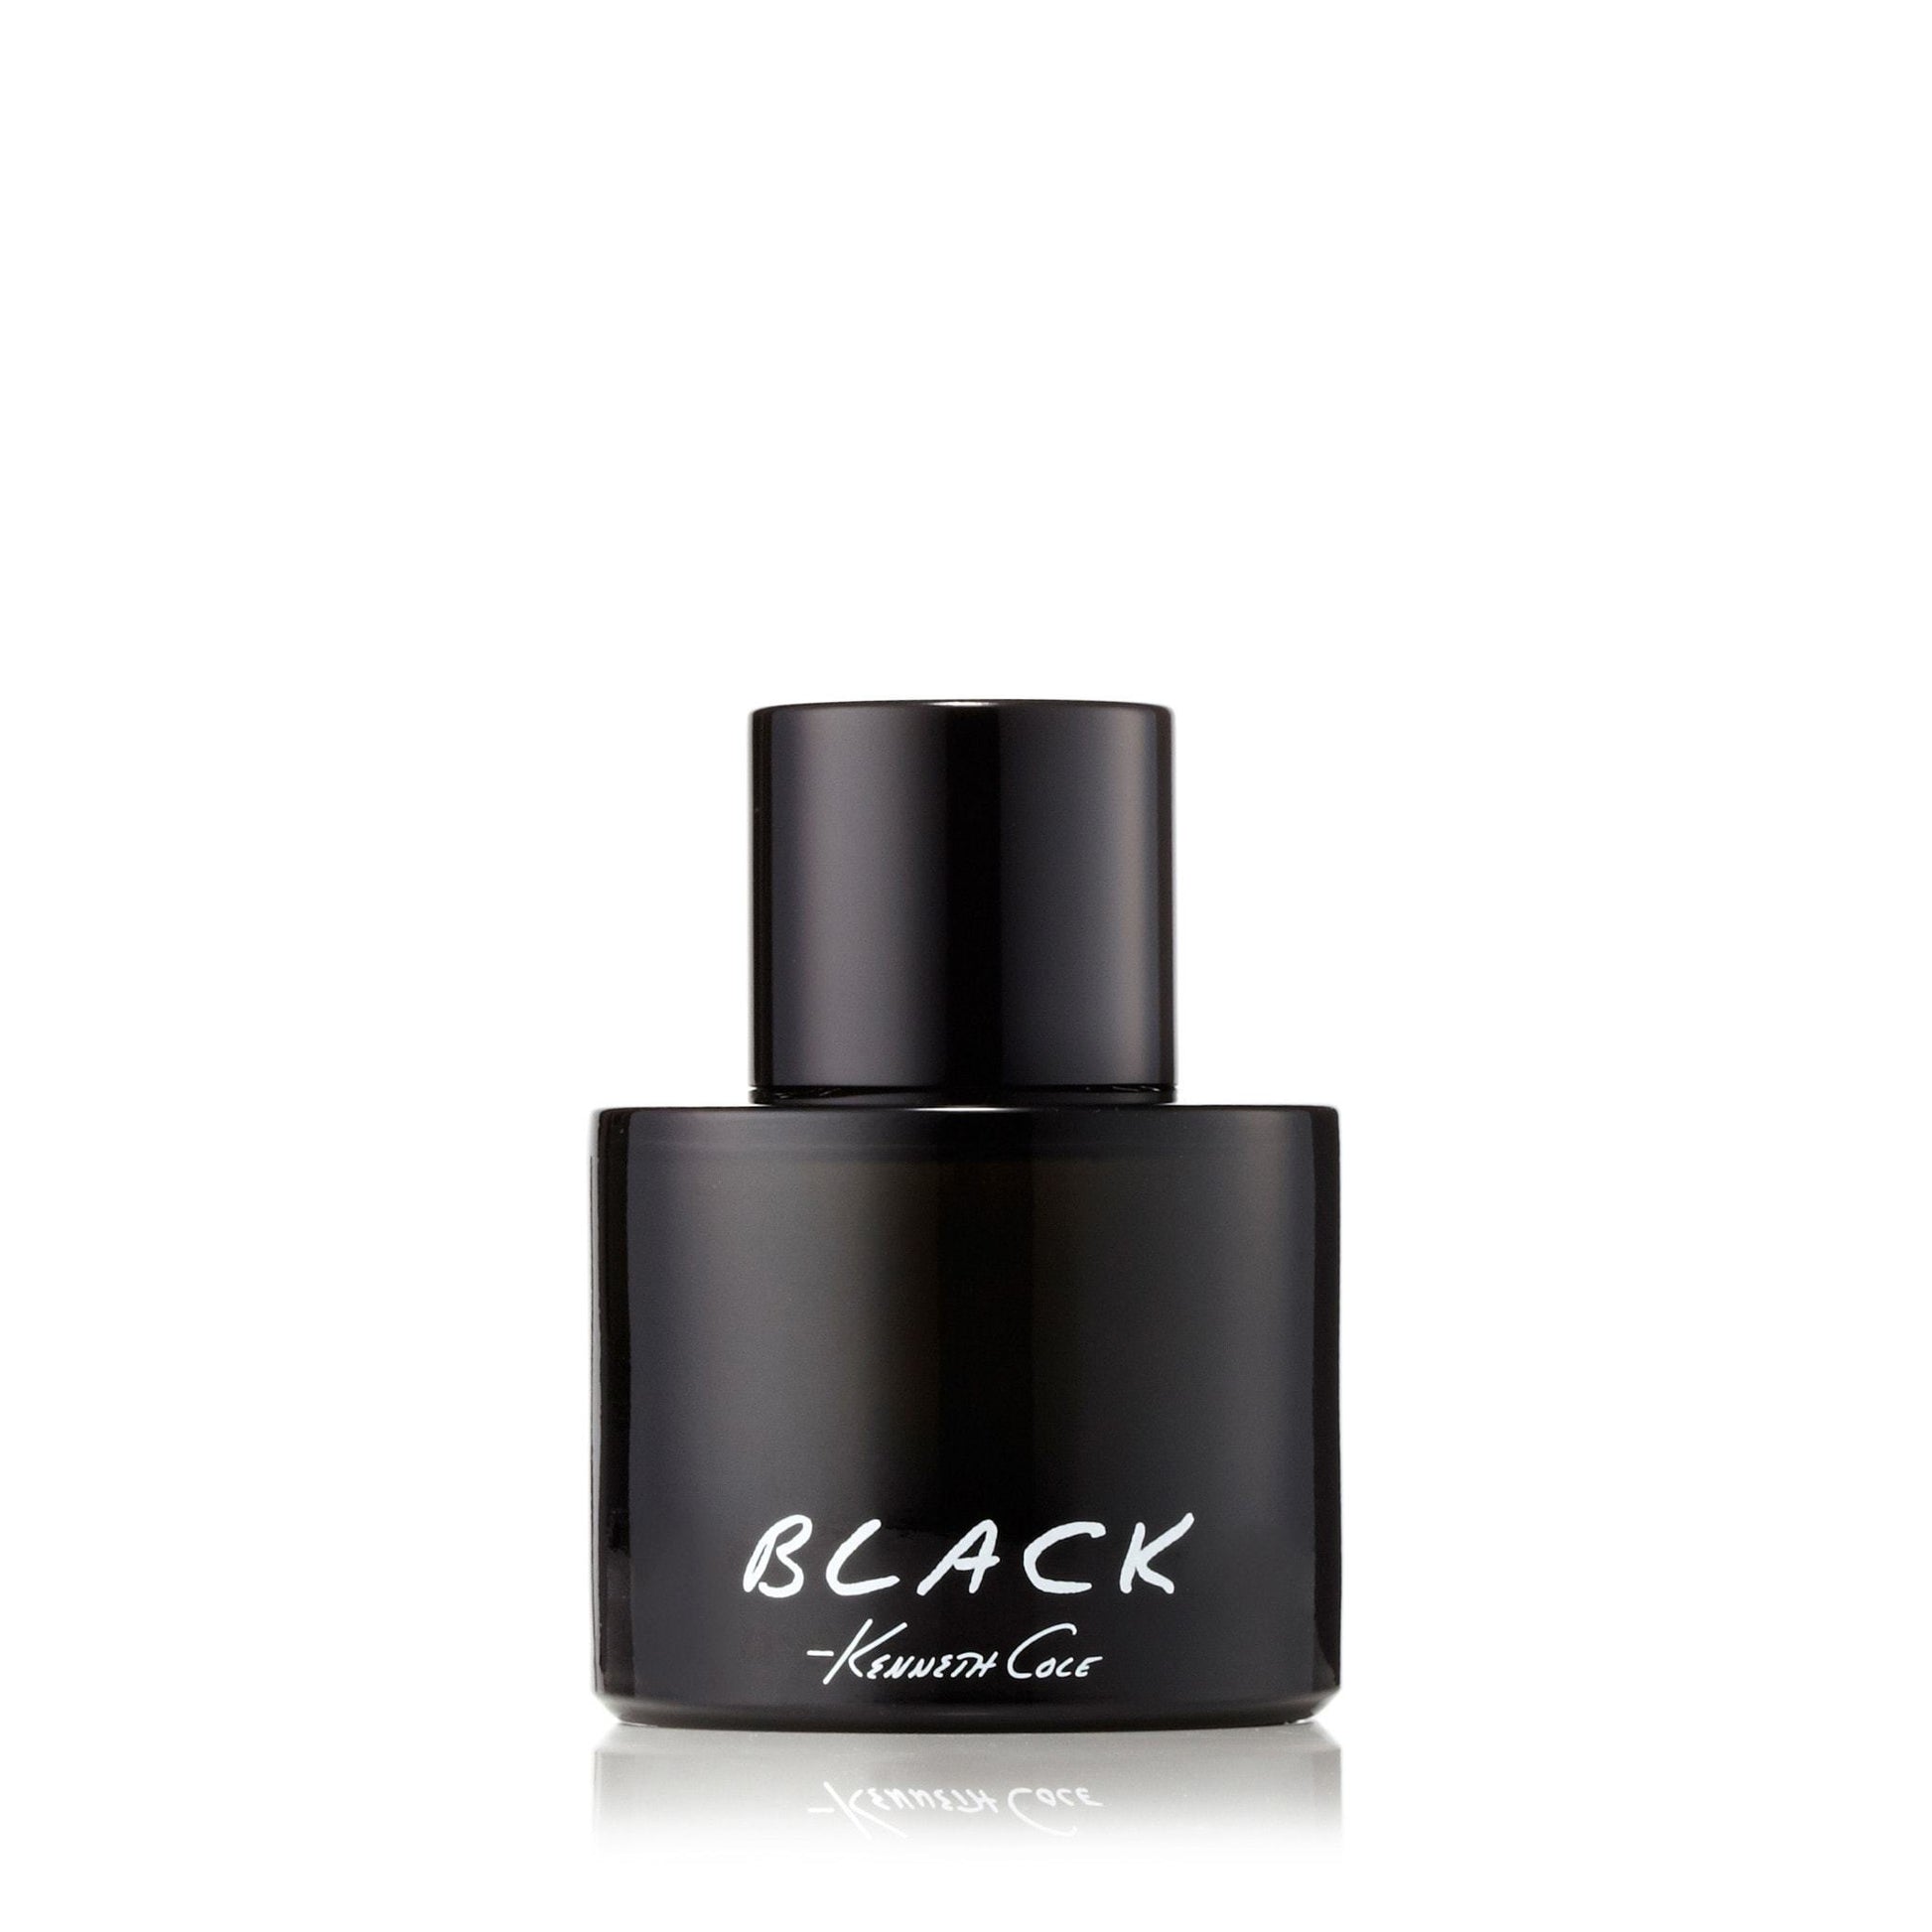 Black Eau de Toilette Spray for Men by Kenneth Cole, Product image 1